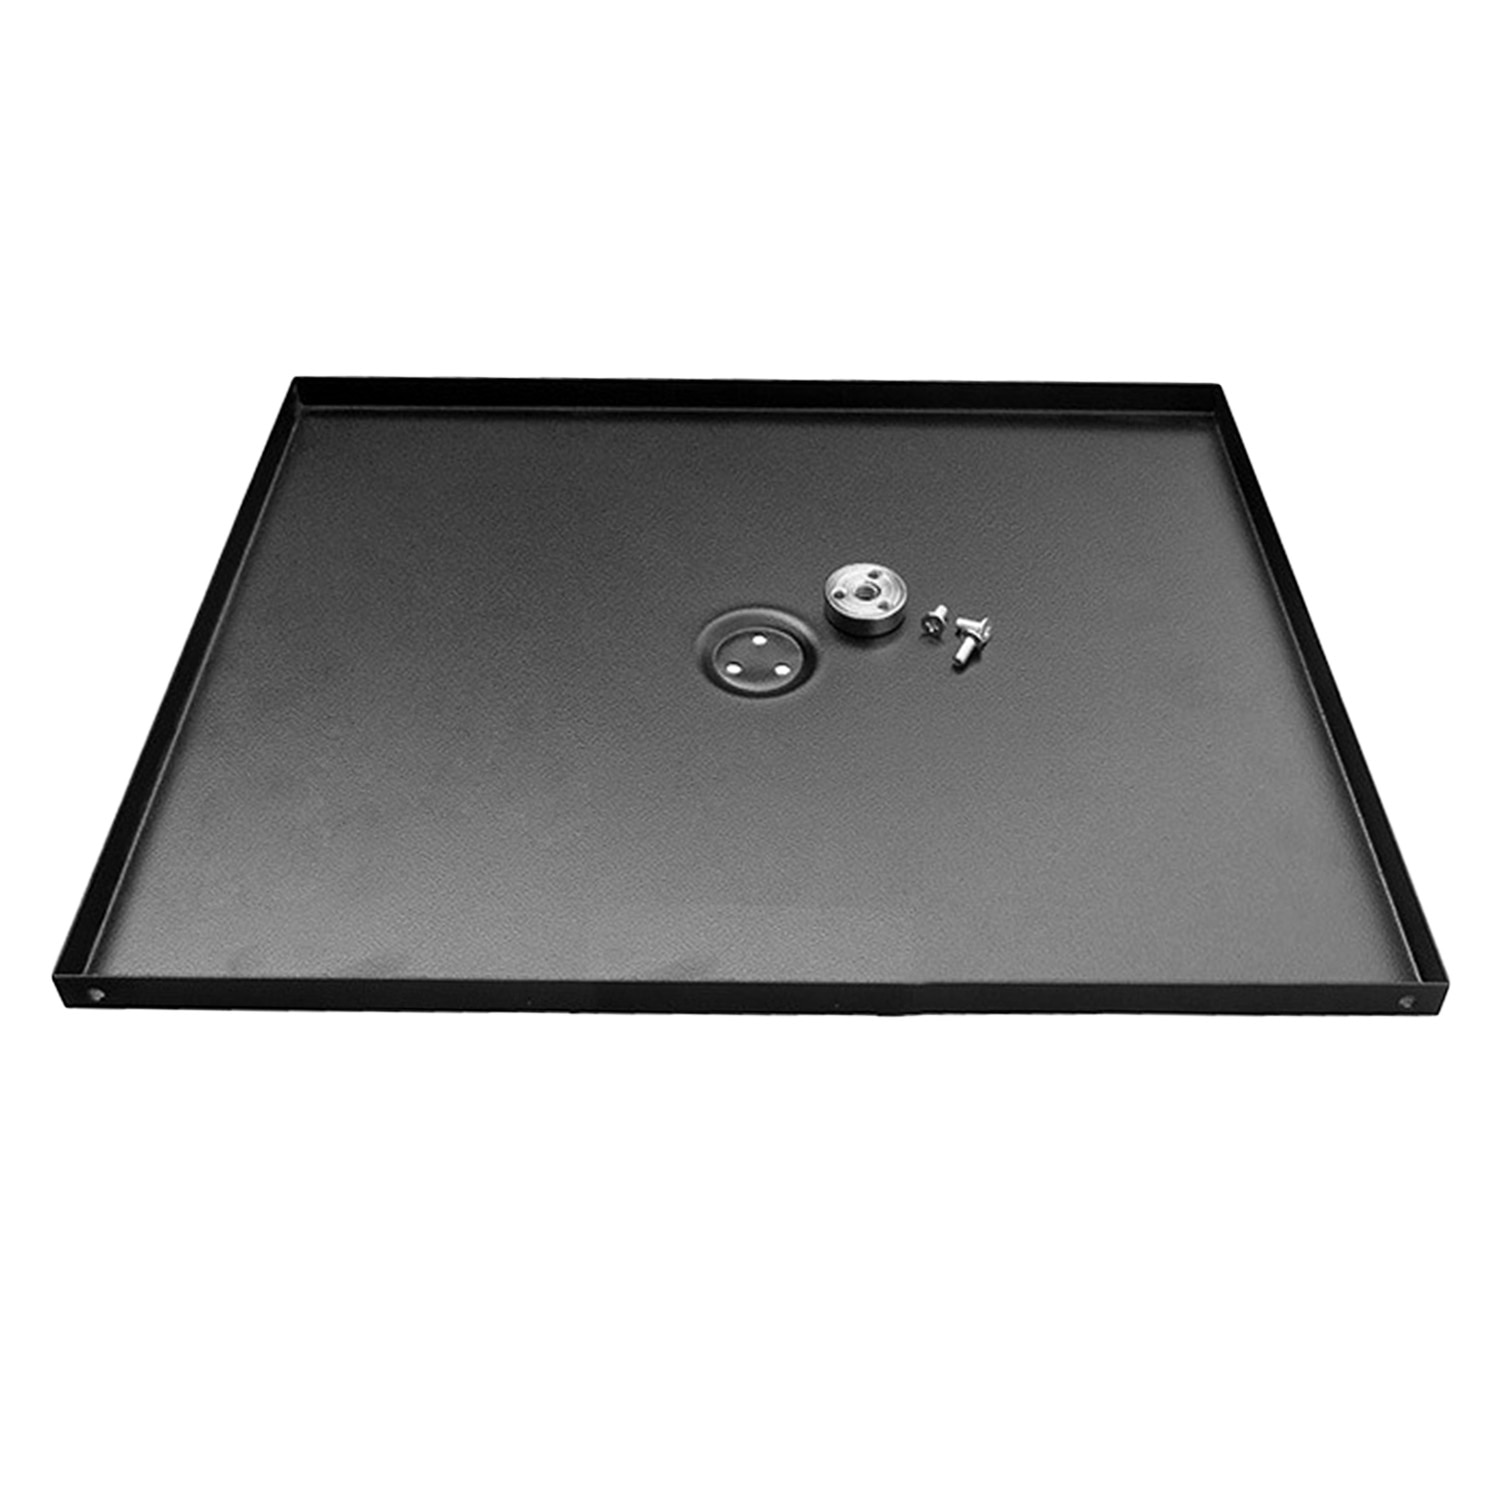 Besegad Universal- Metall Tablett Stand Platte Plattform Halfter Halterung für 3/8 zoll Stativ Projektoren Monitore Laptops